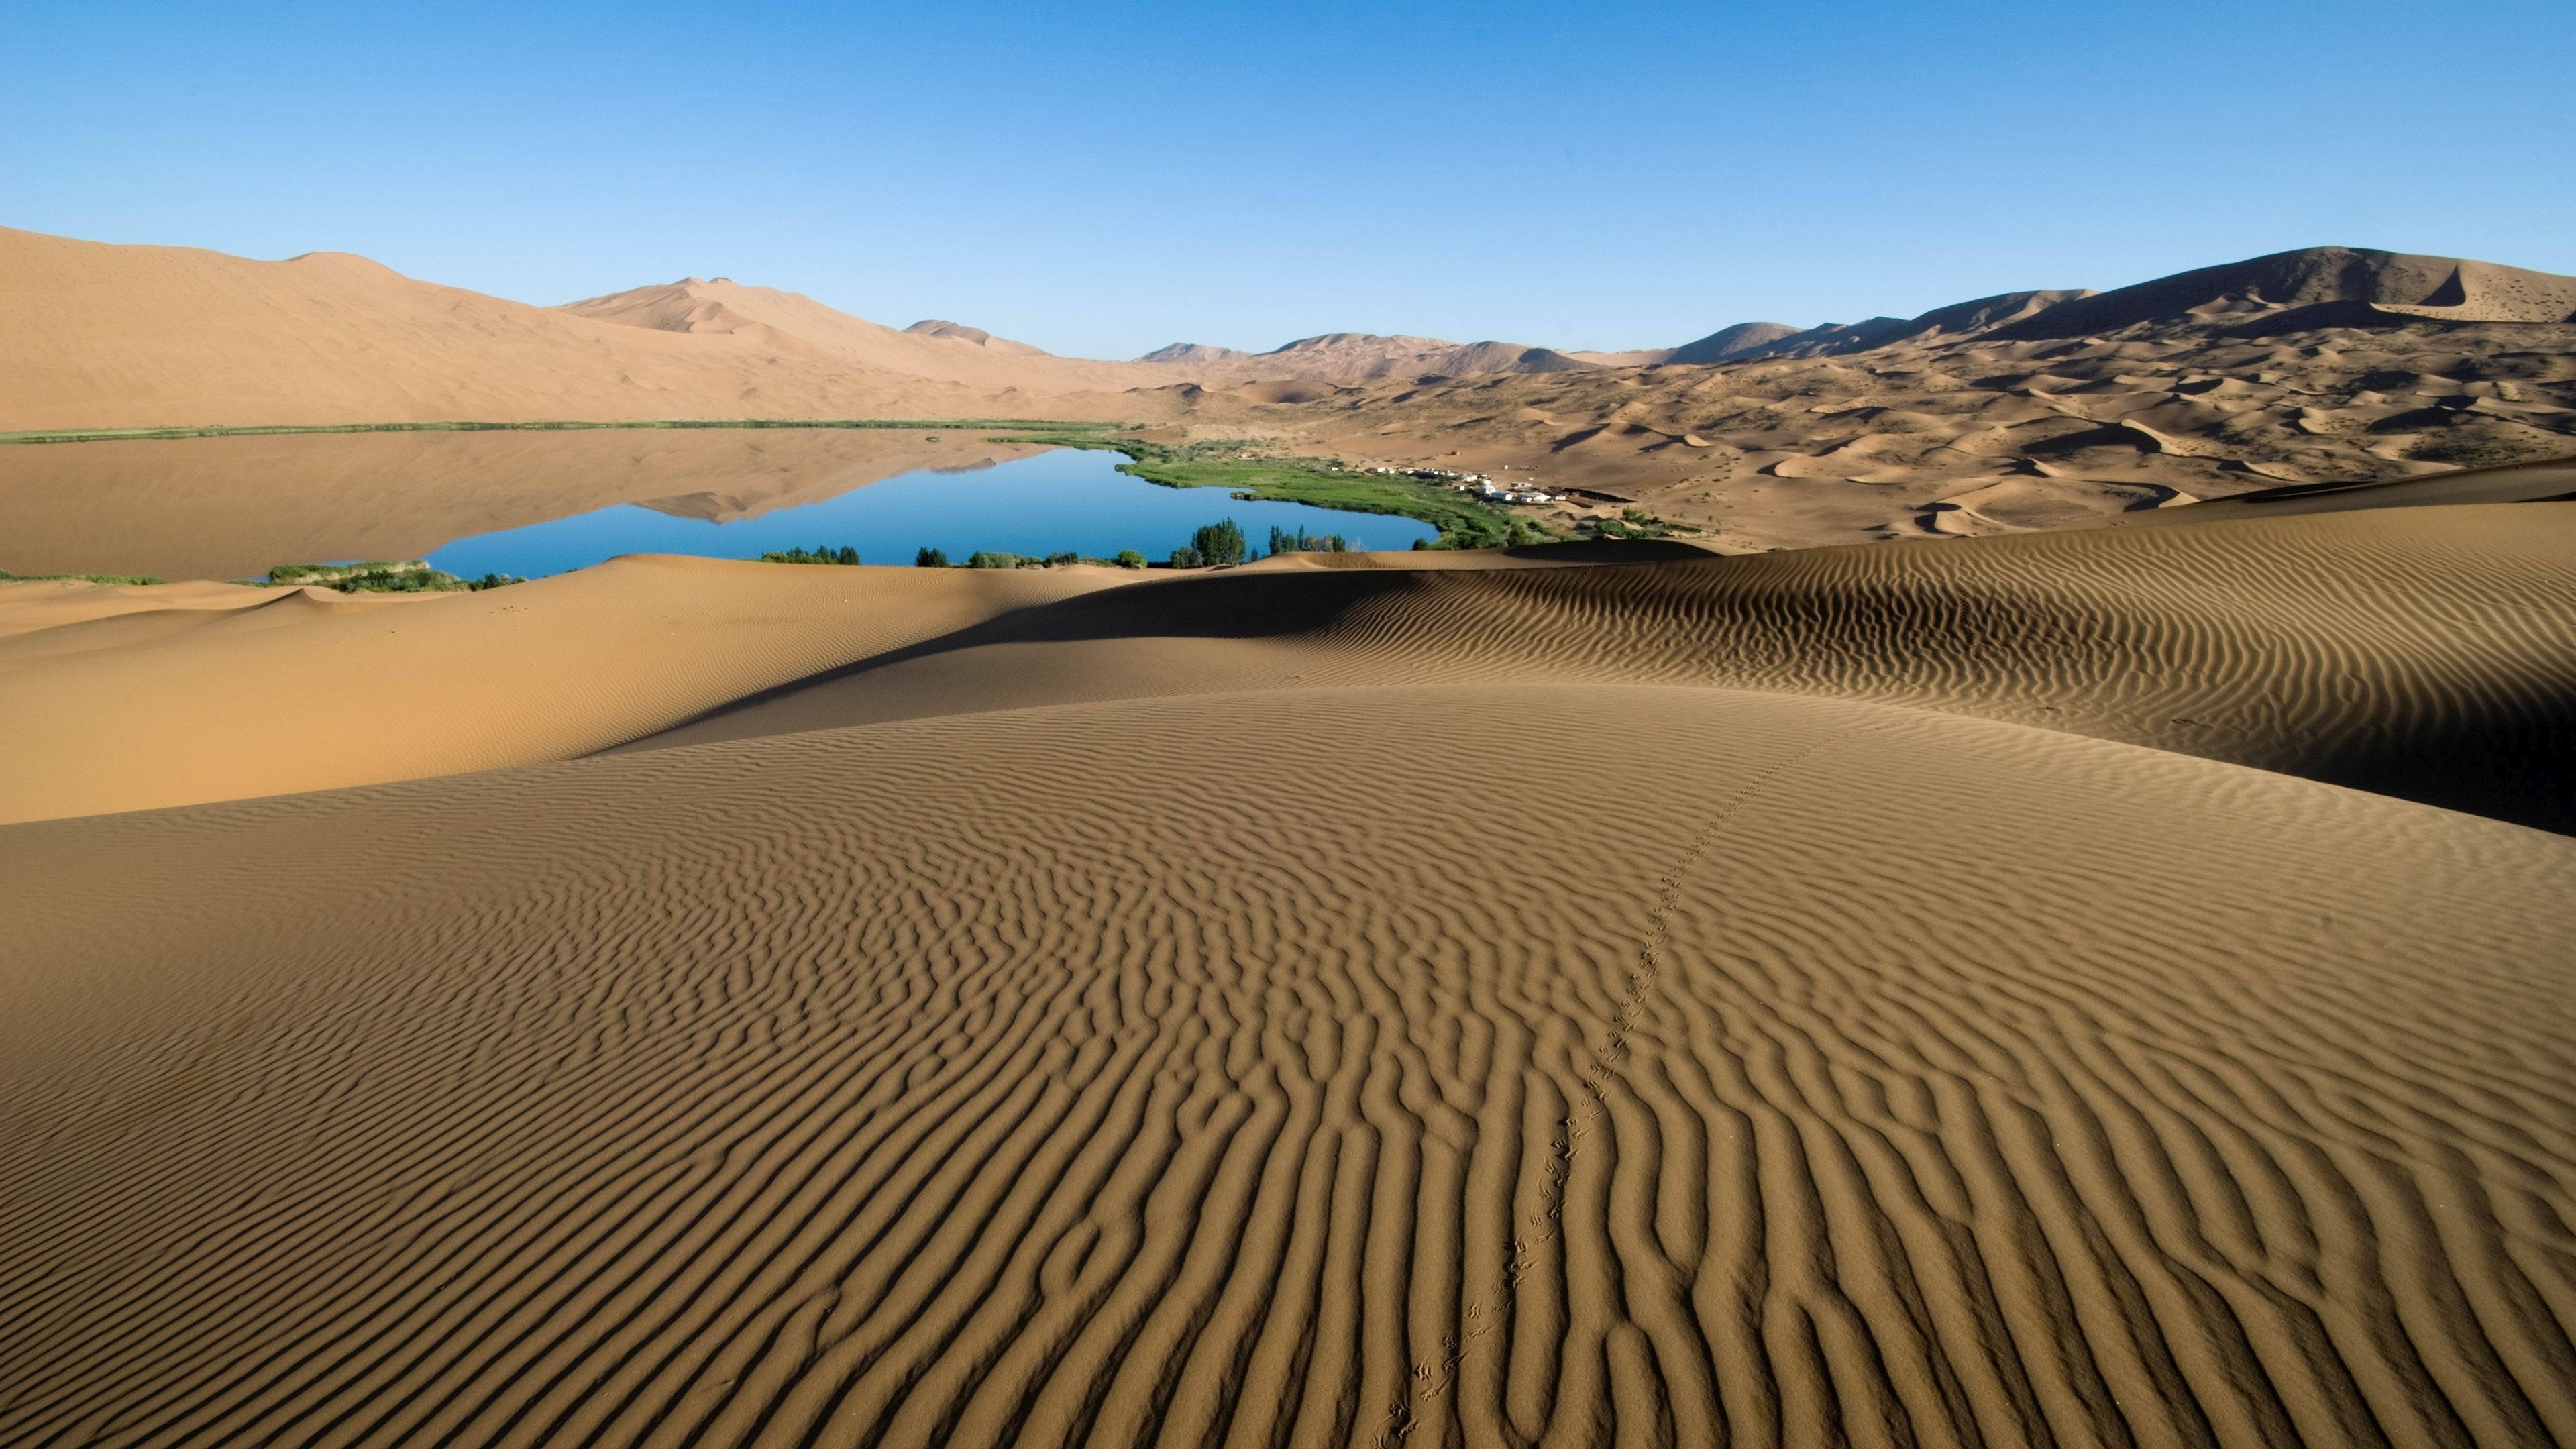 3840x2160 Desert Oasis Landscape Widescreen Wallpaper 50089